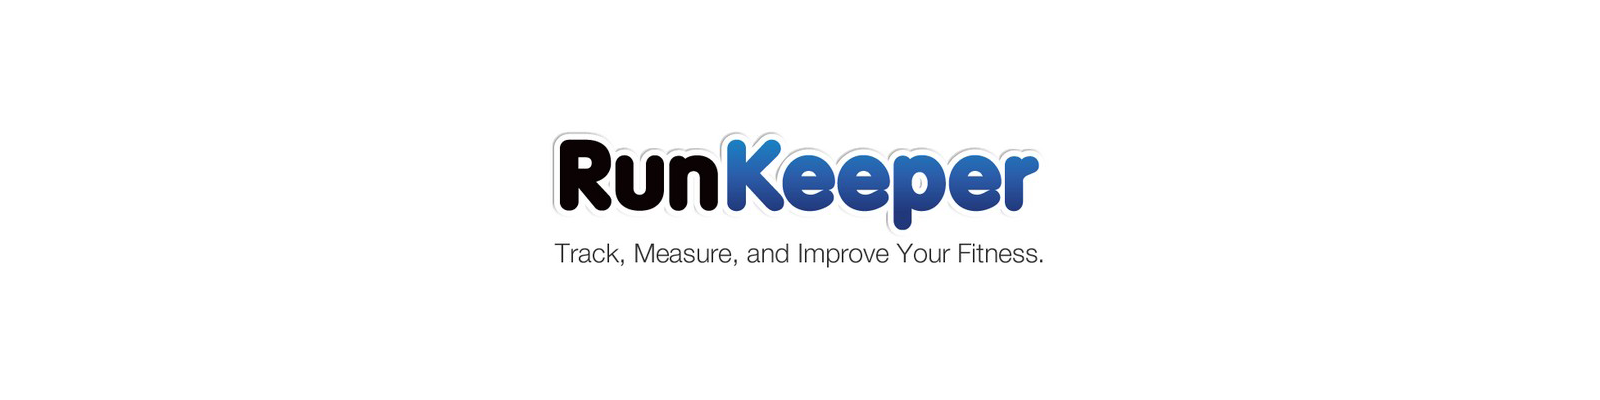 app like runkeeper